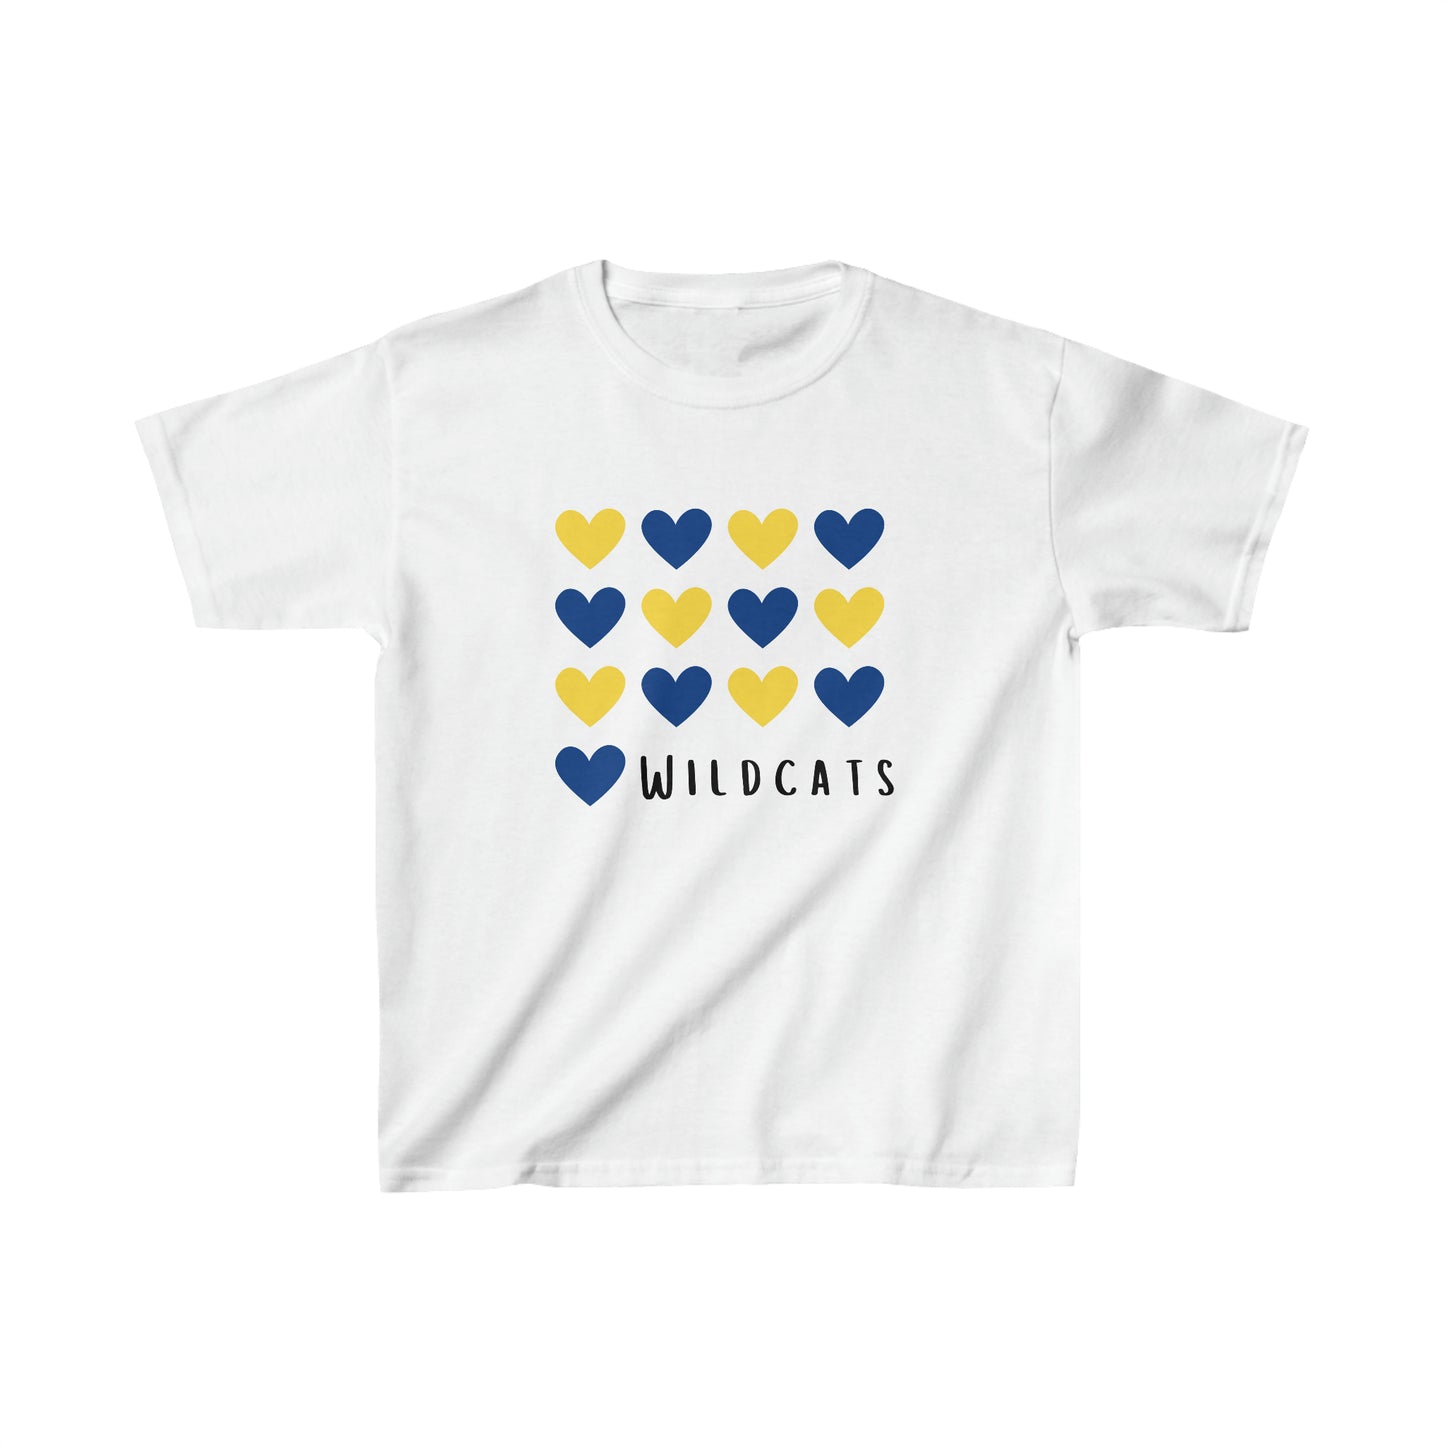 I HEART Wildcats- Kids T-Shirt